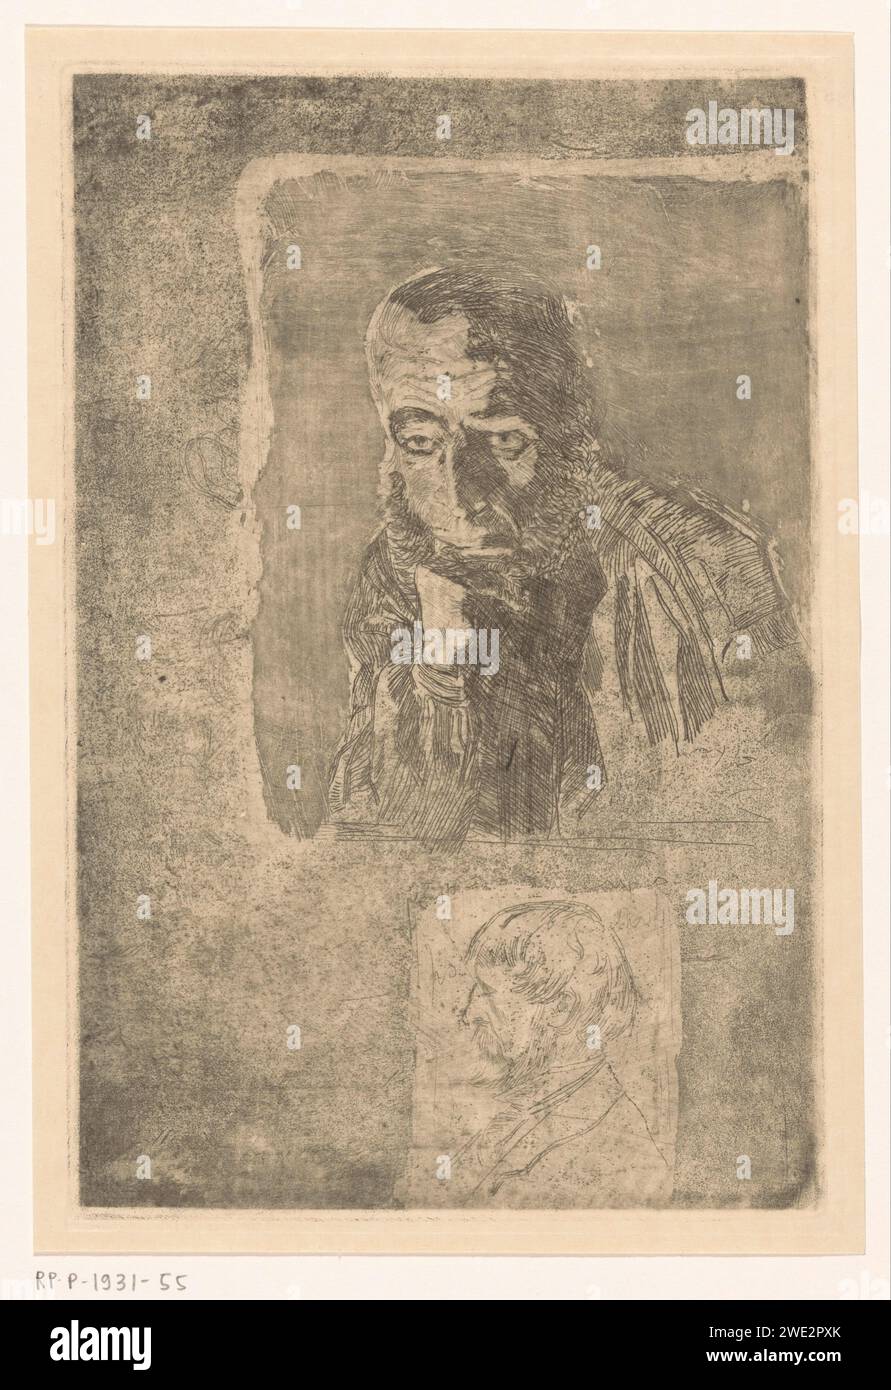 Deux hommes barbus, dont l'un soutient sa tête avec sa main, Martinus van Regteren Altena, 1876 - 1908 papier gravé gravure anonyme personnage historique représenté. barbe. tête tenue dans la ou les main(s), coudes appuyés sur une élévation ou sur les genoux Banque D'Images